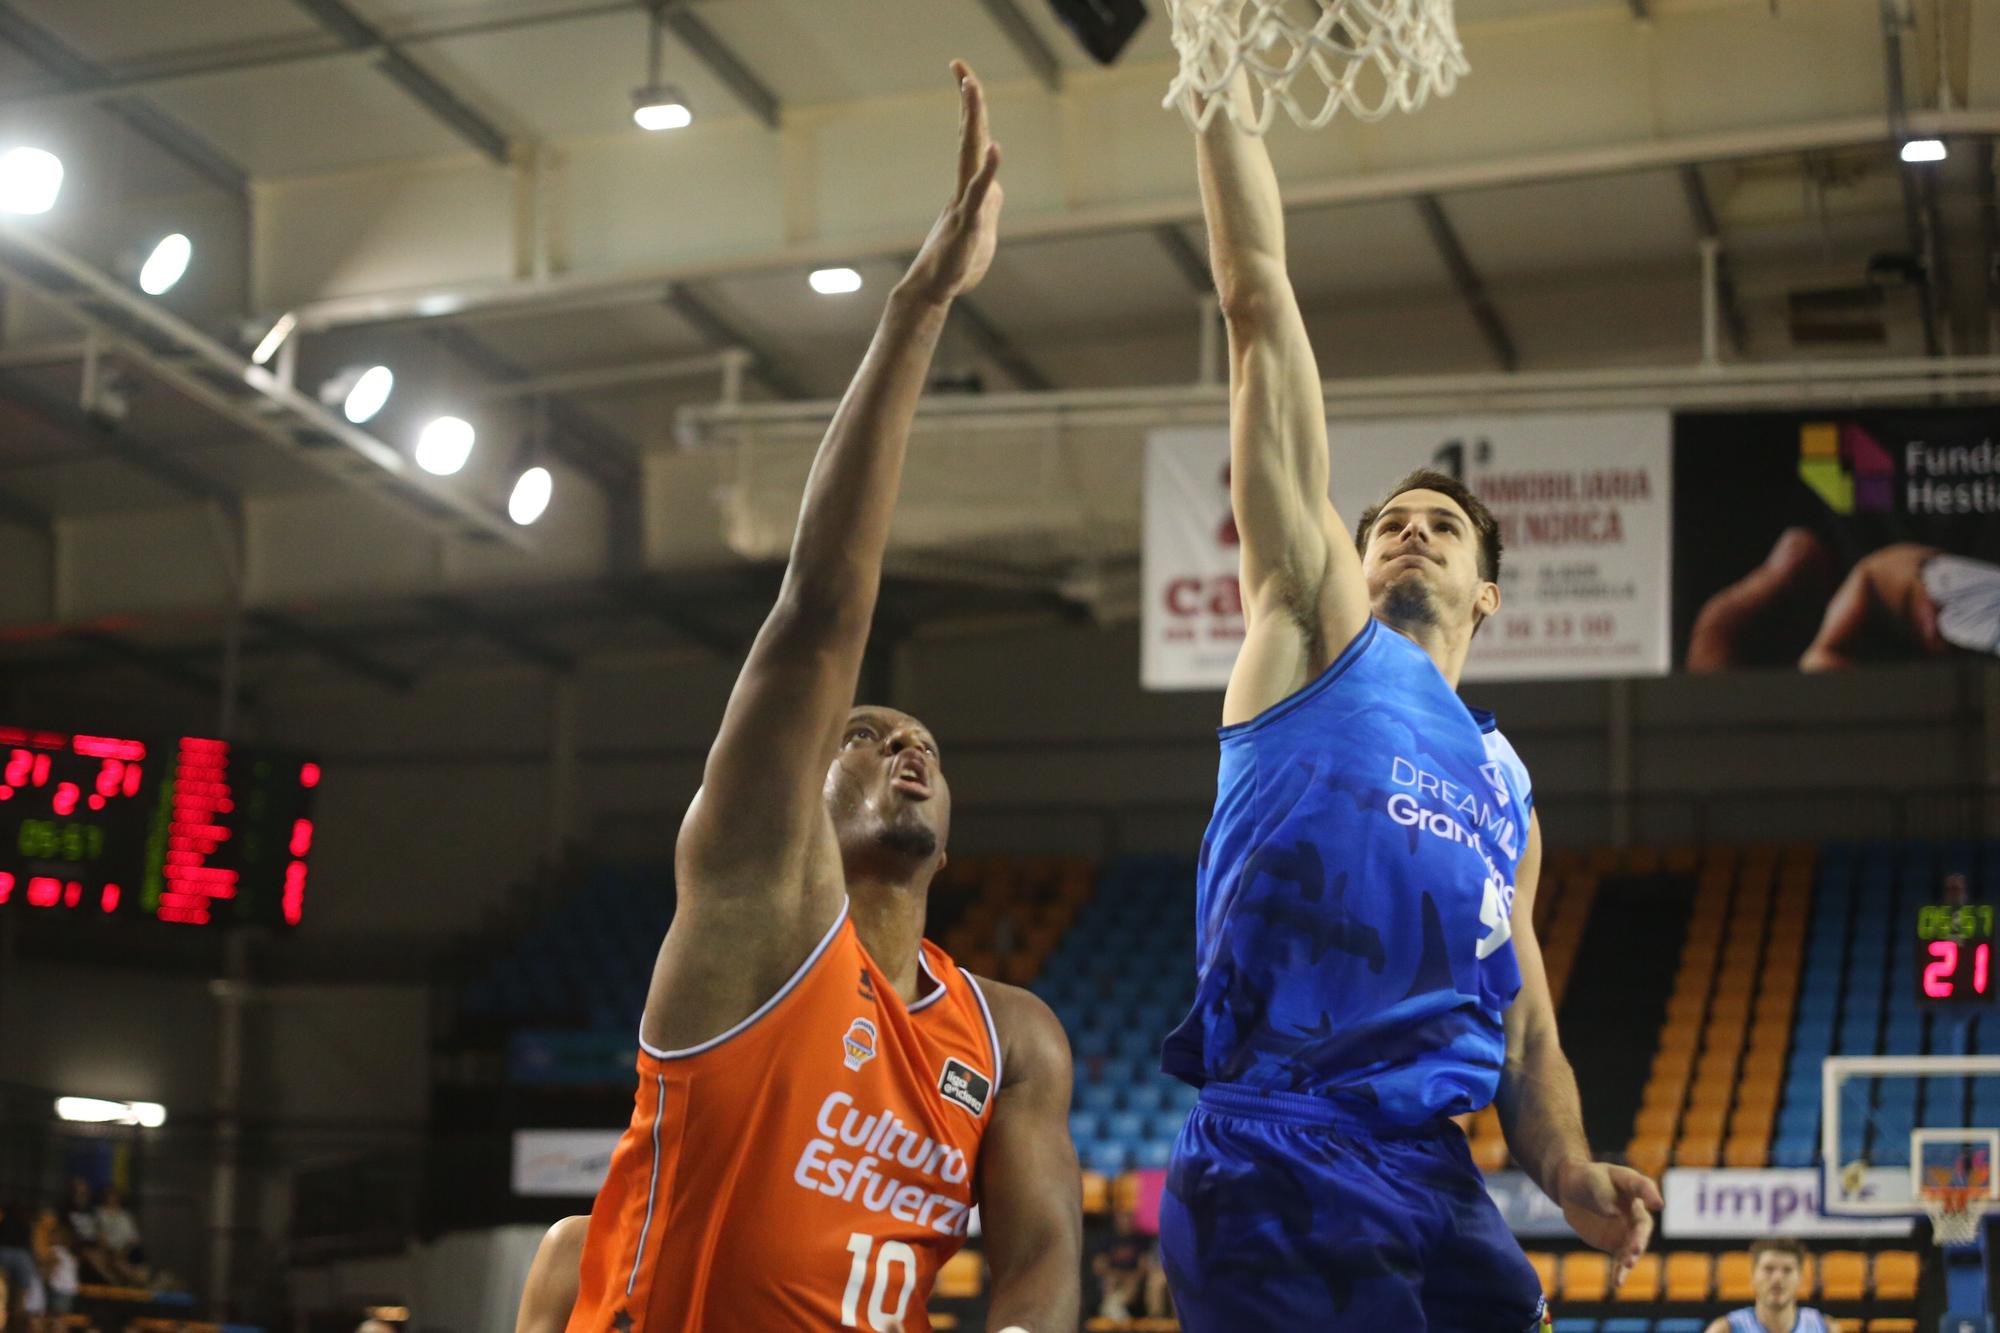 Pretemporada: Valencia Basket - Dreamland Gran Canaria